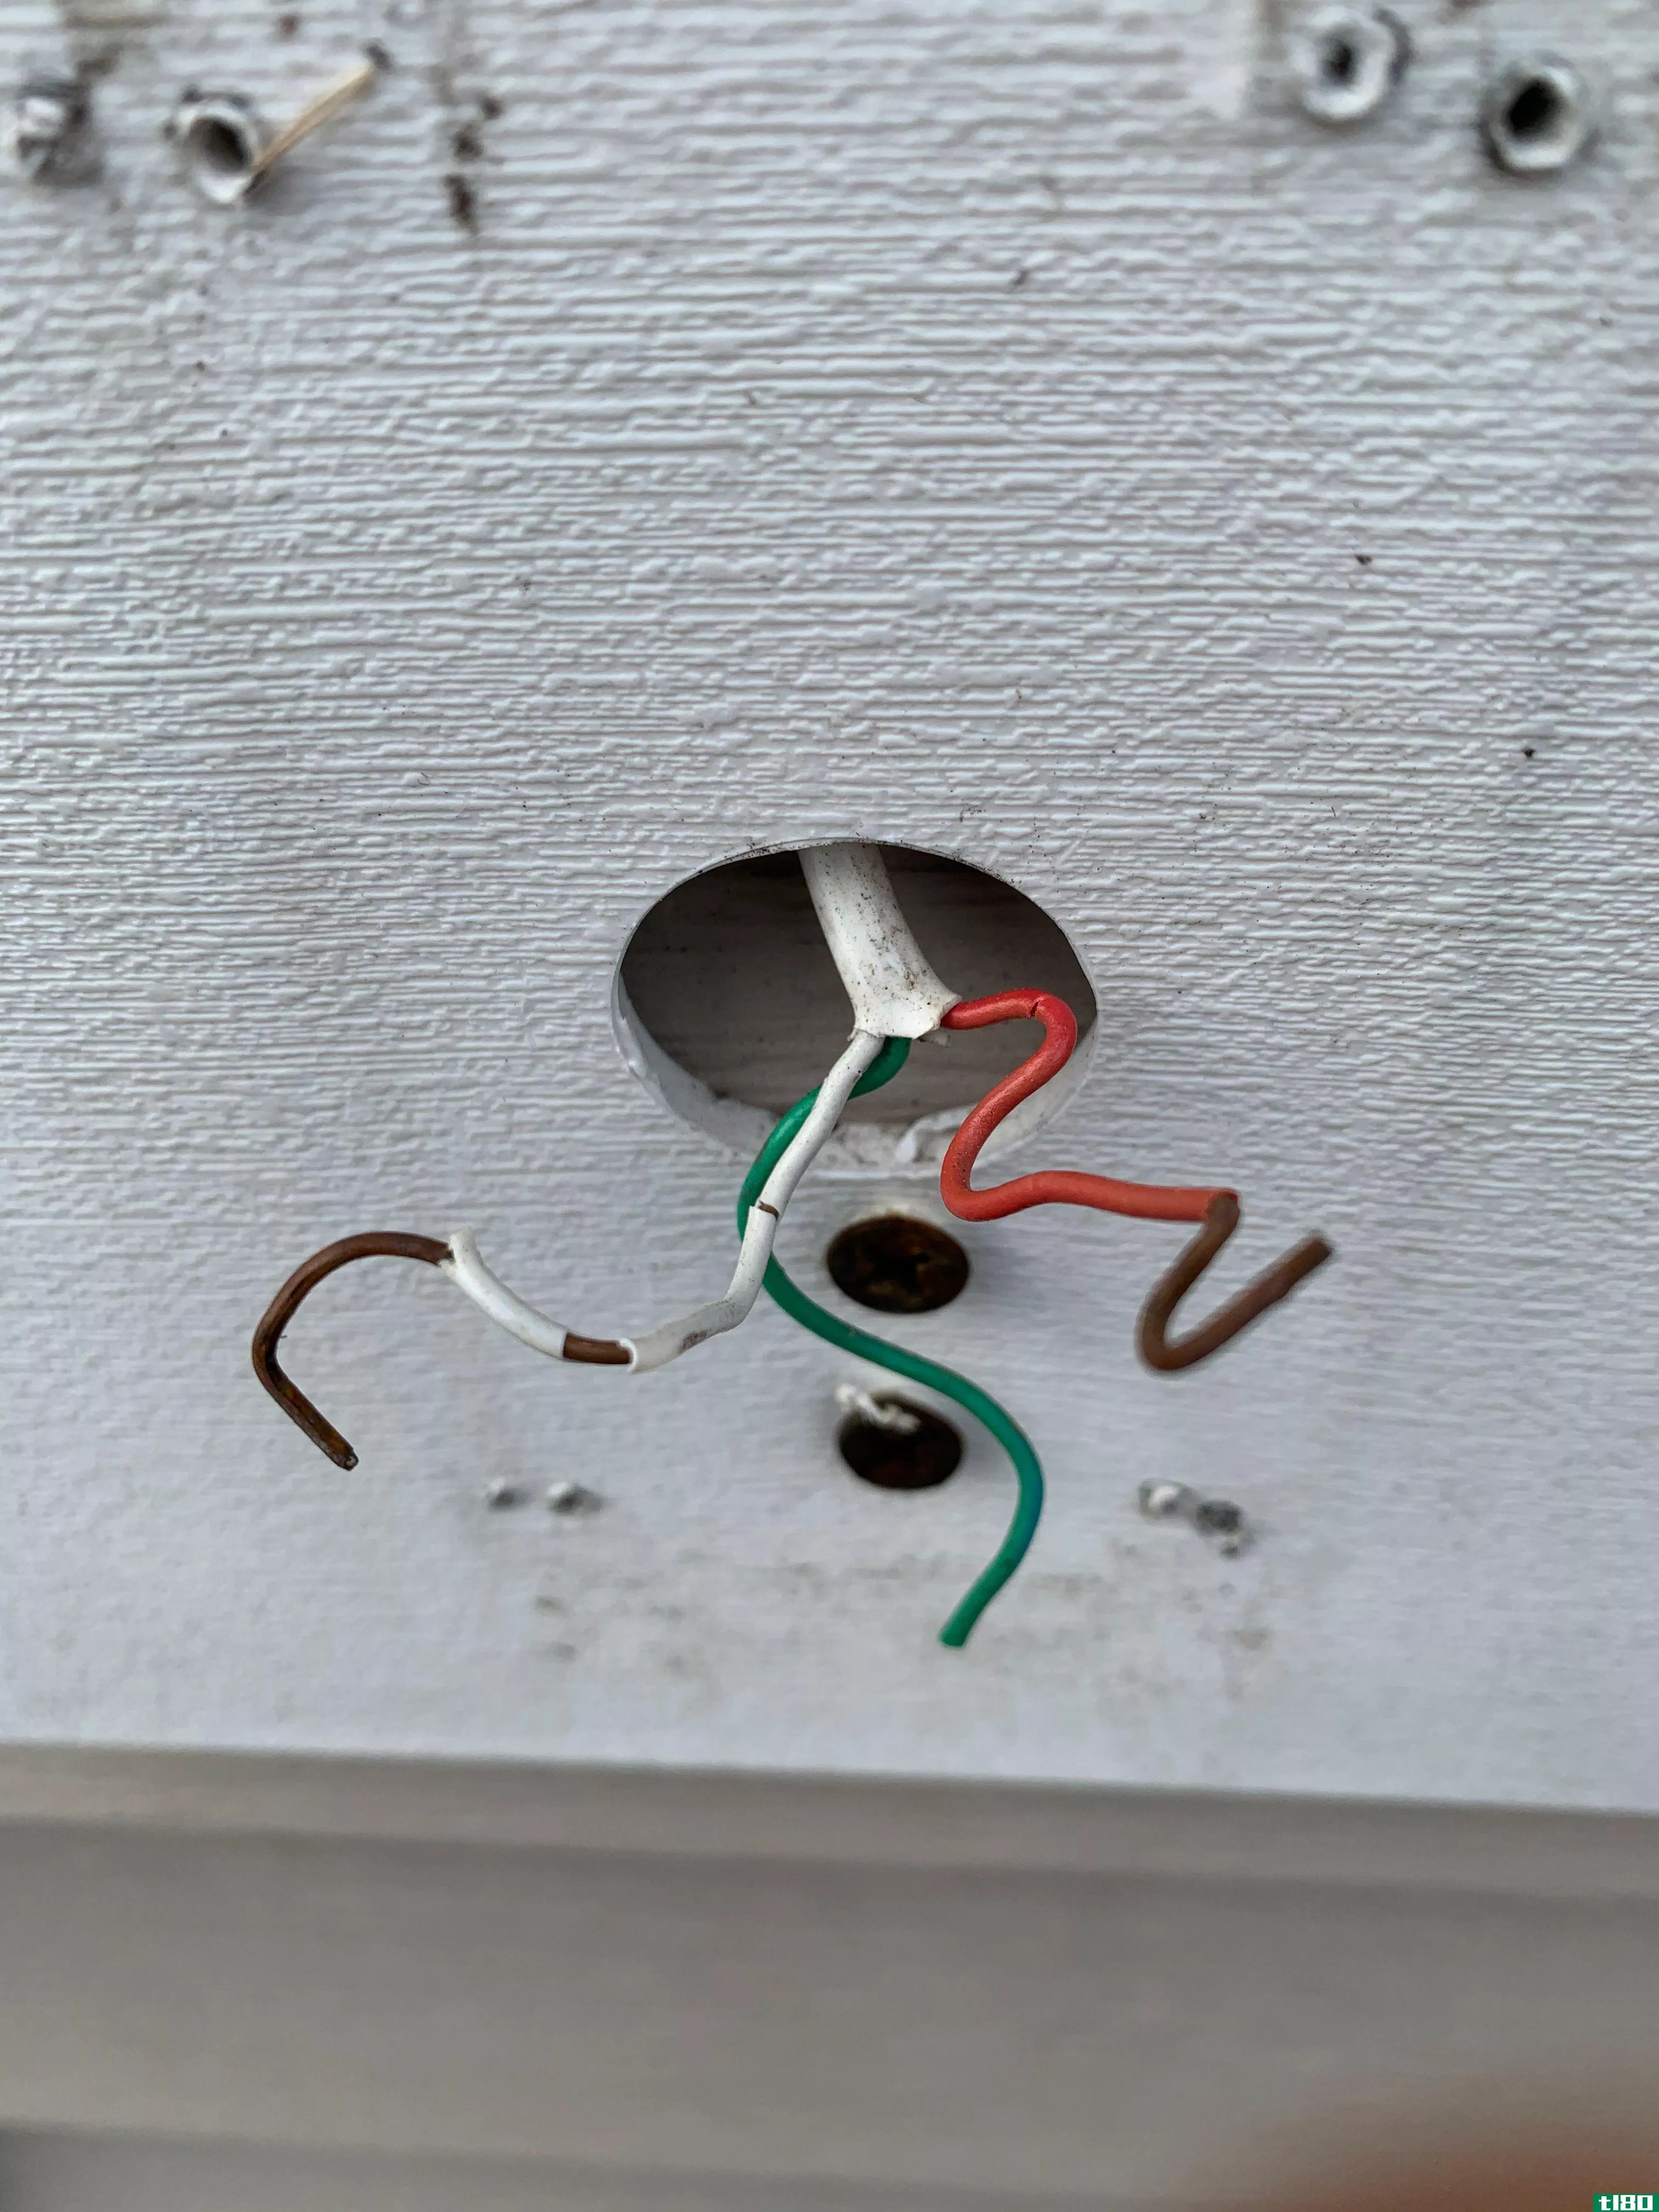 Exposed doorbell wiring